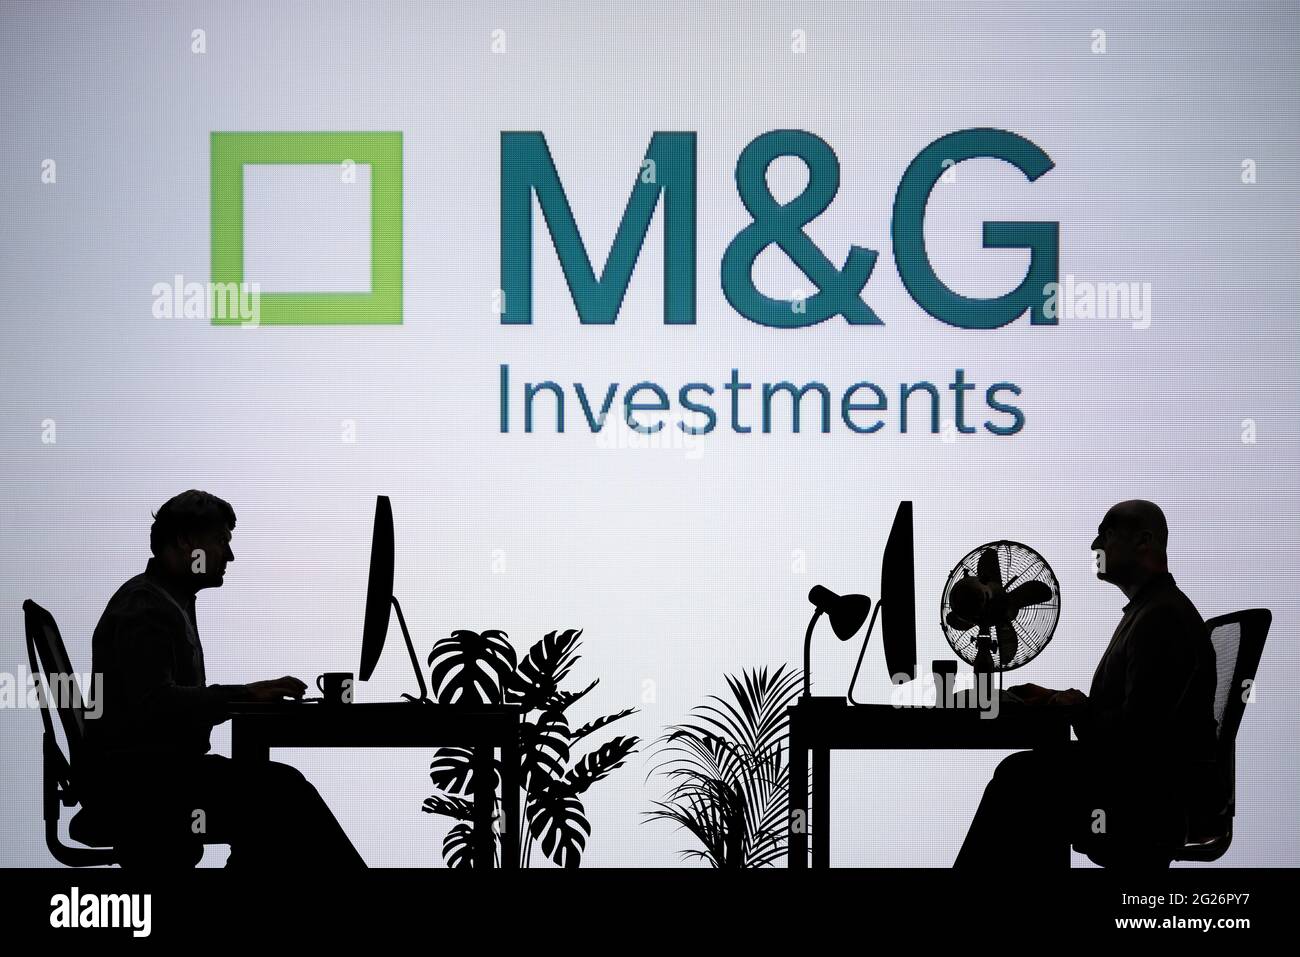 Le logo M&G Investments est visible sur un écran LED en arrière-plan tandis que deux personnes silhoueteuses travaillent dans un environnement de bureau (usage éditorial uniquement) Banque D'Images